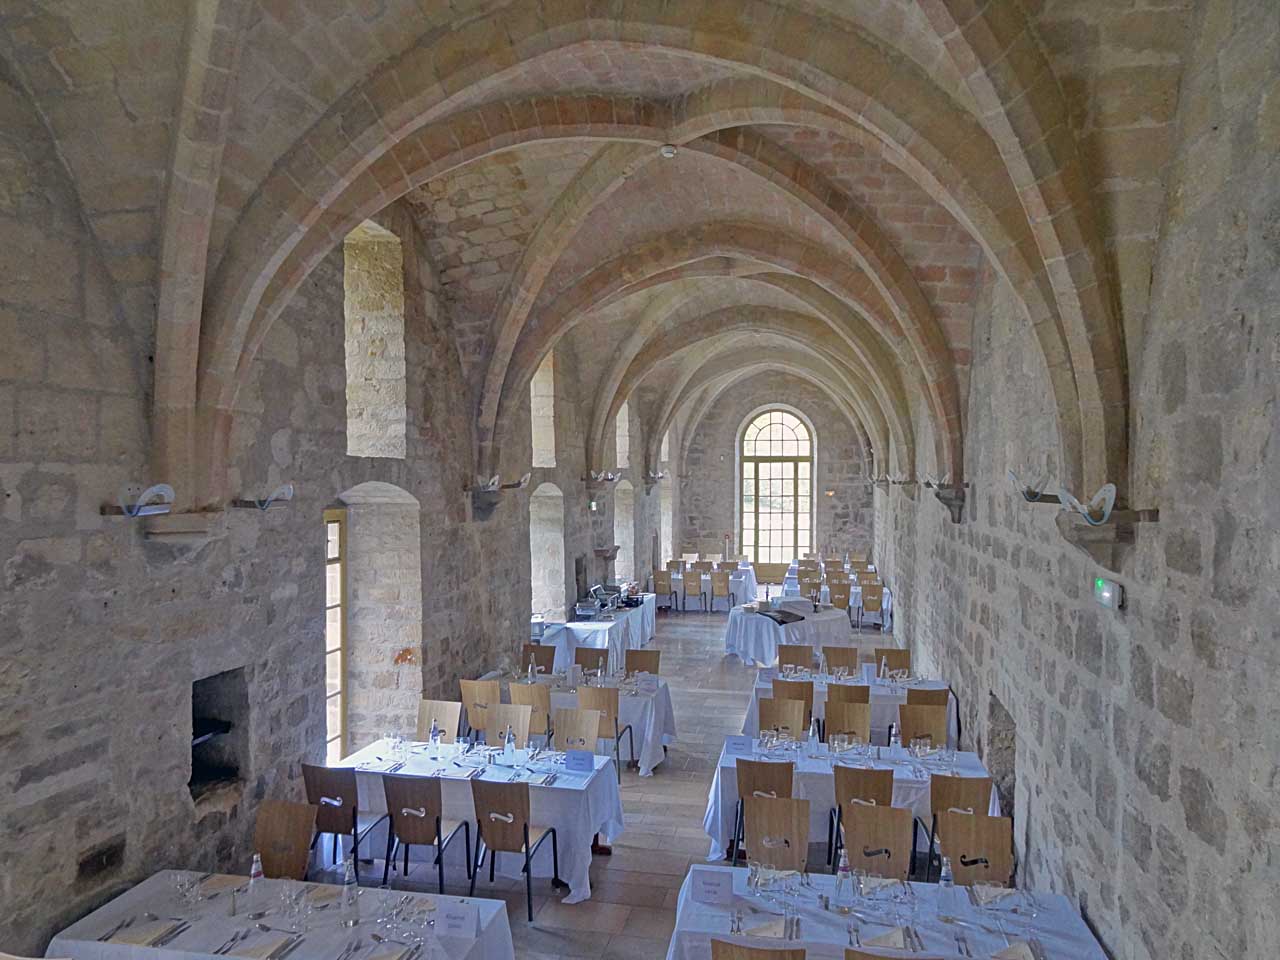 Salle à manger dans le bâtiment des latrines de l'abbaye de Royaumont